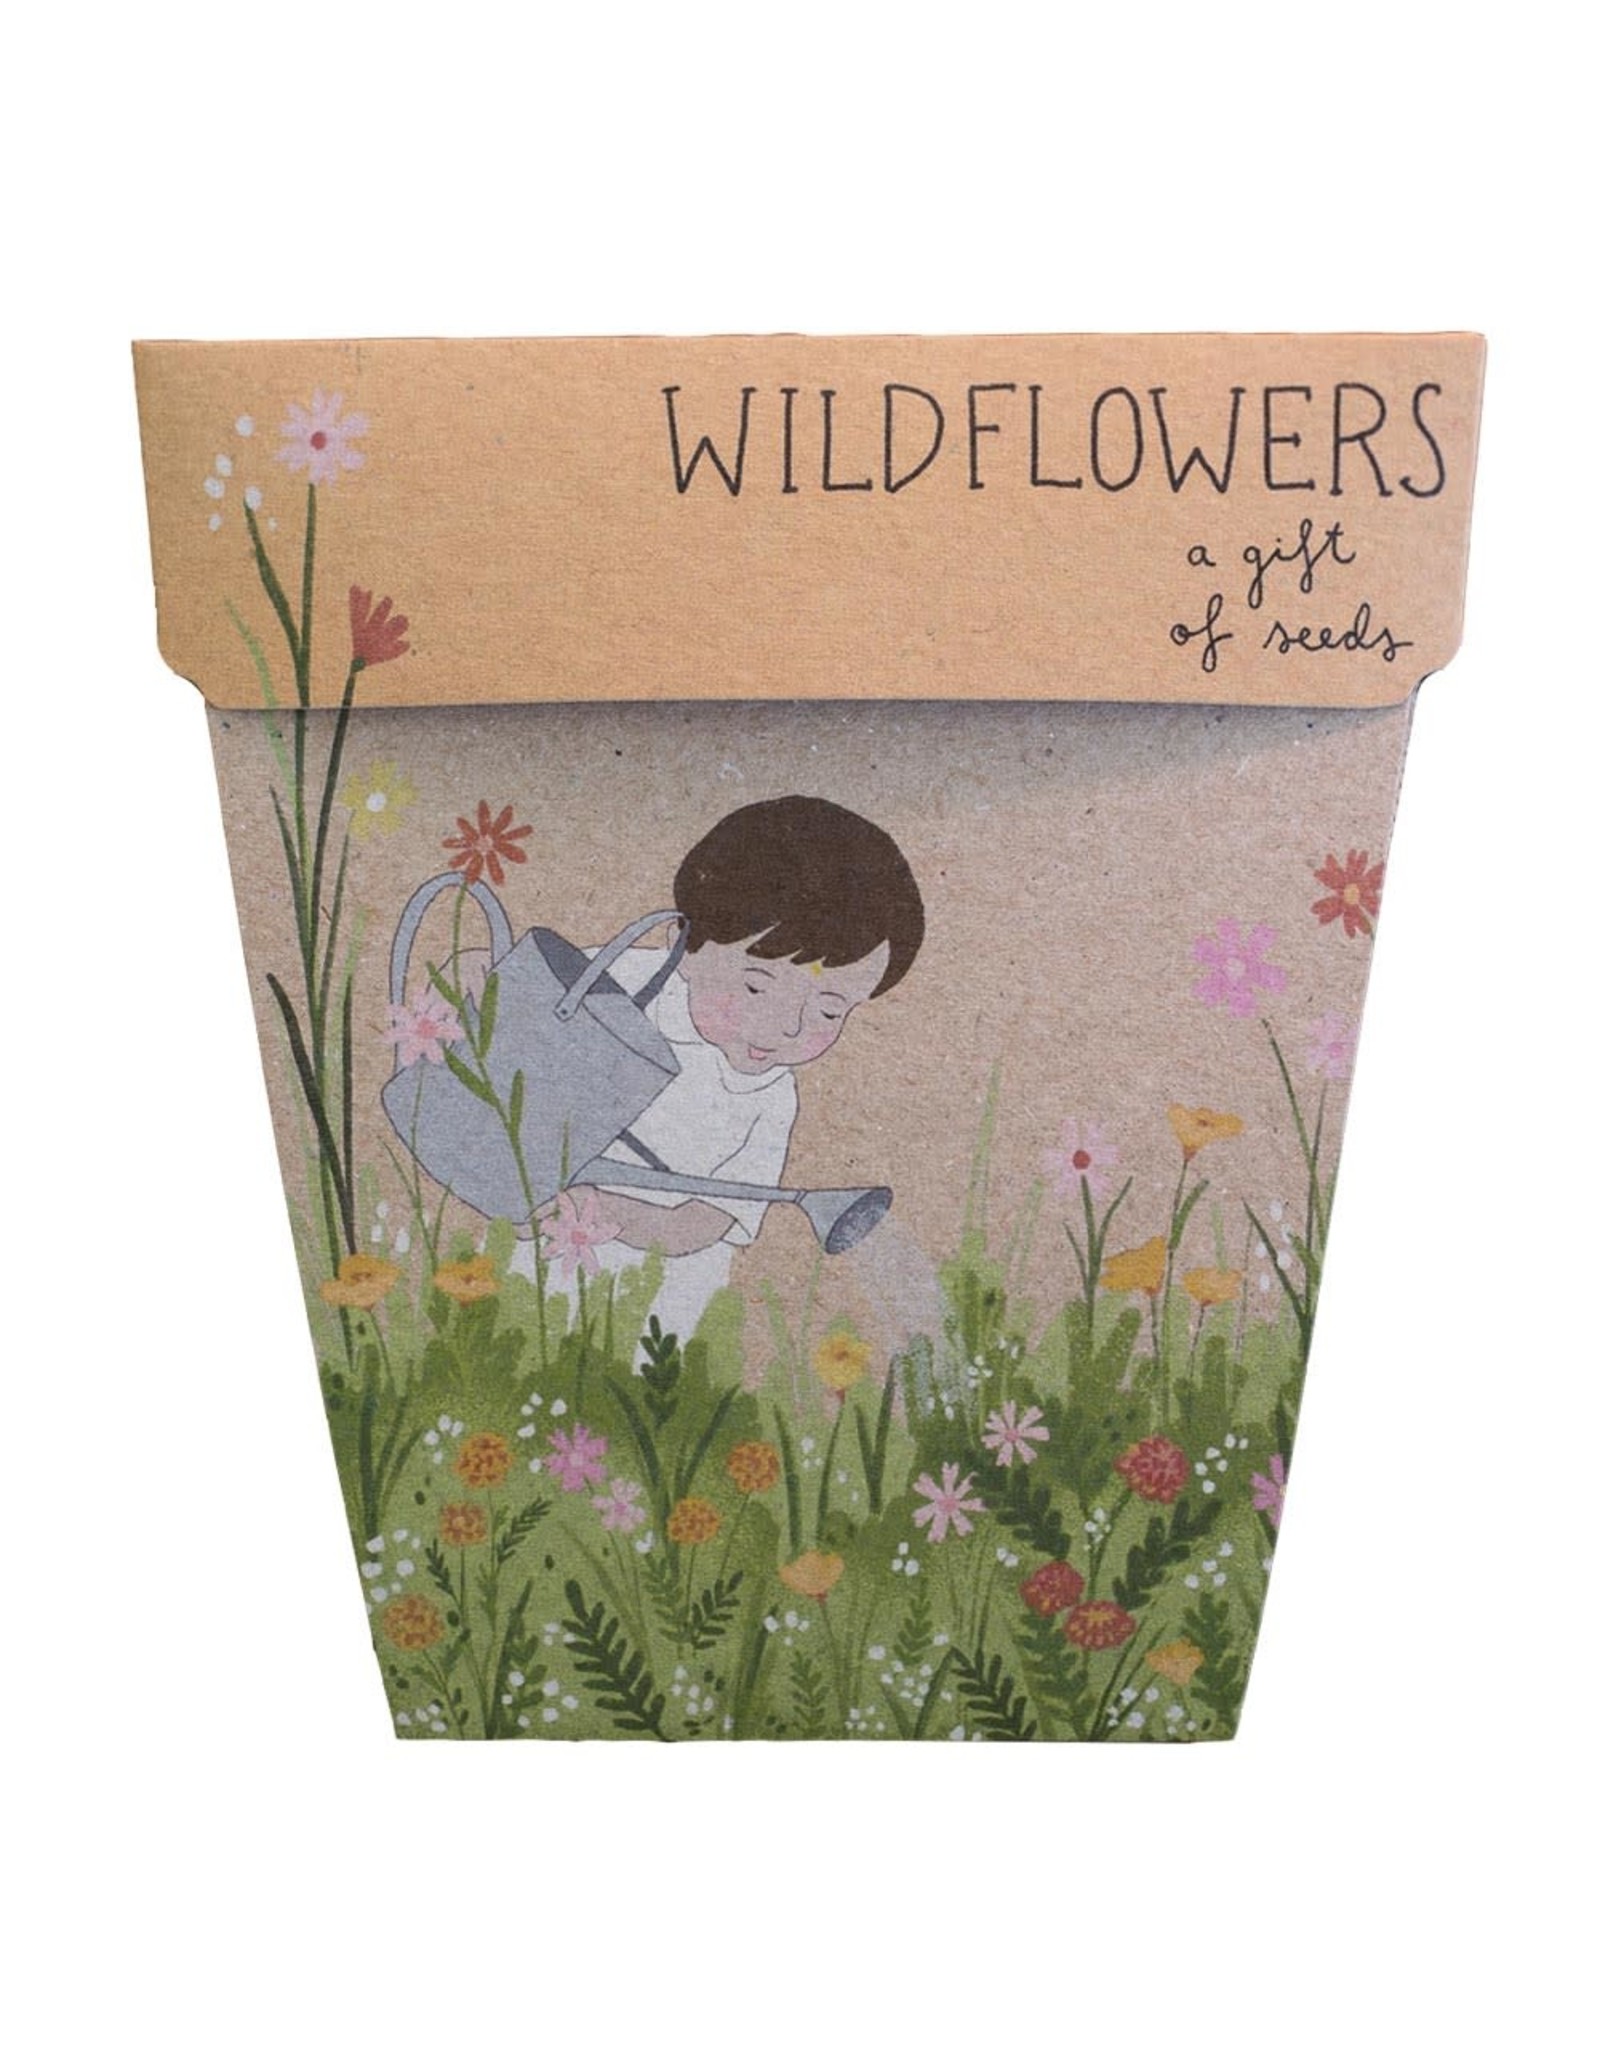 Sow 'N Sow Gift of Seeds - Wildflowers